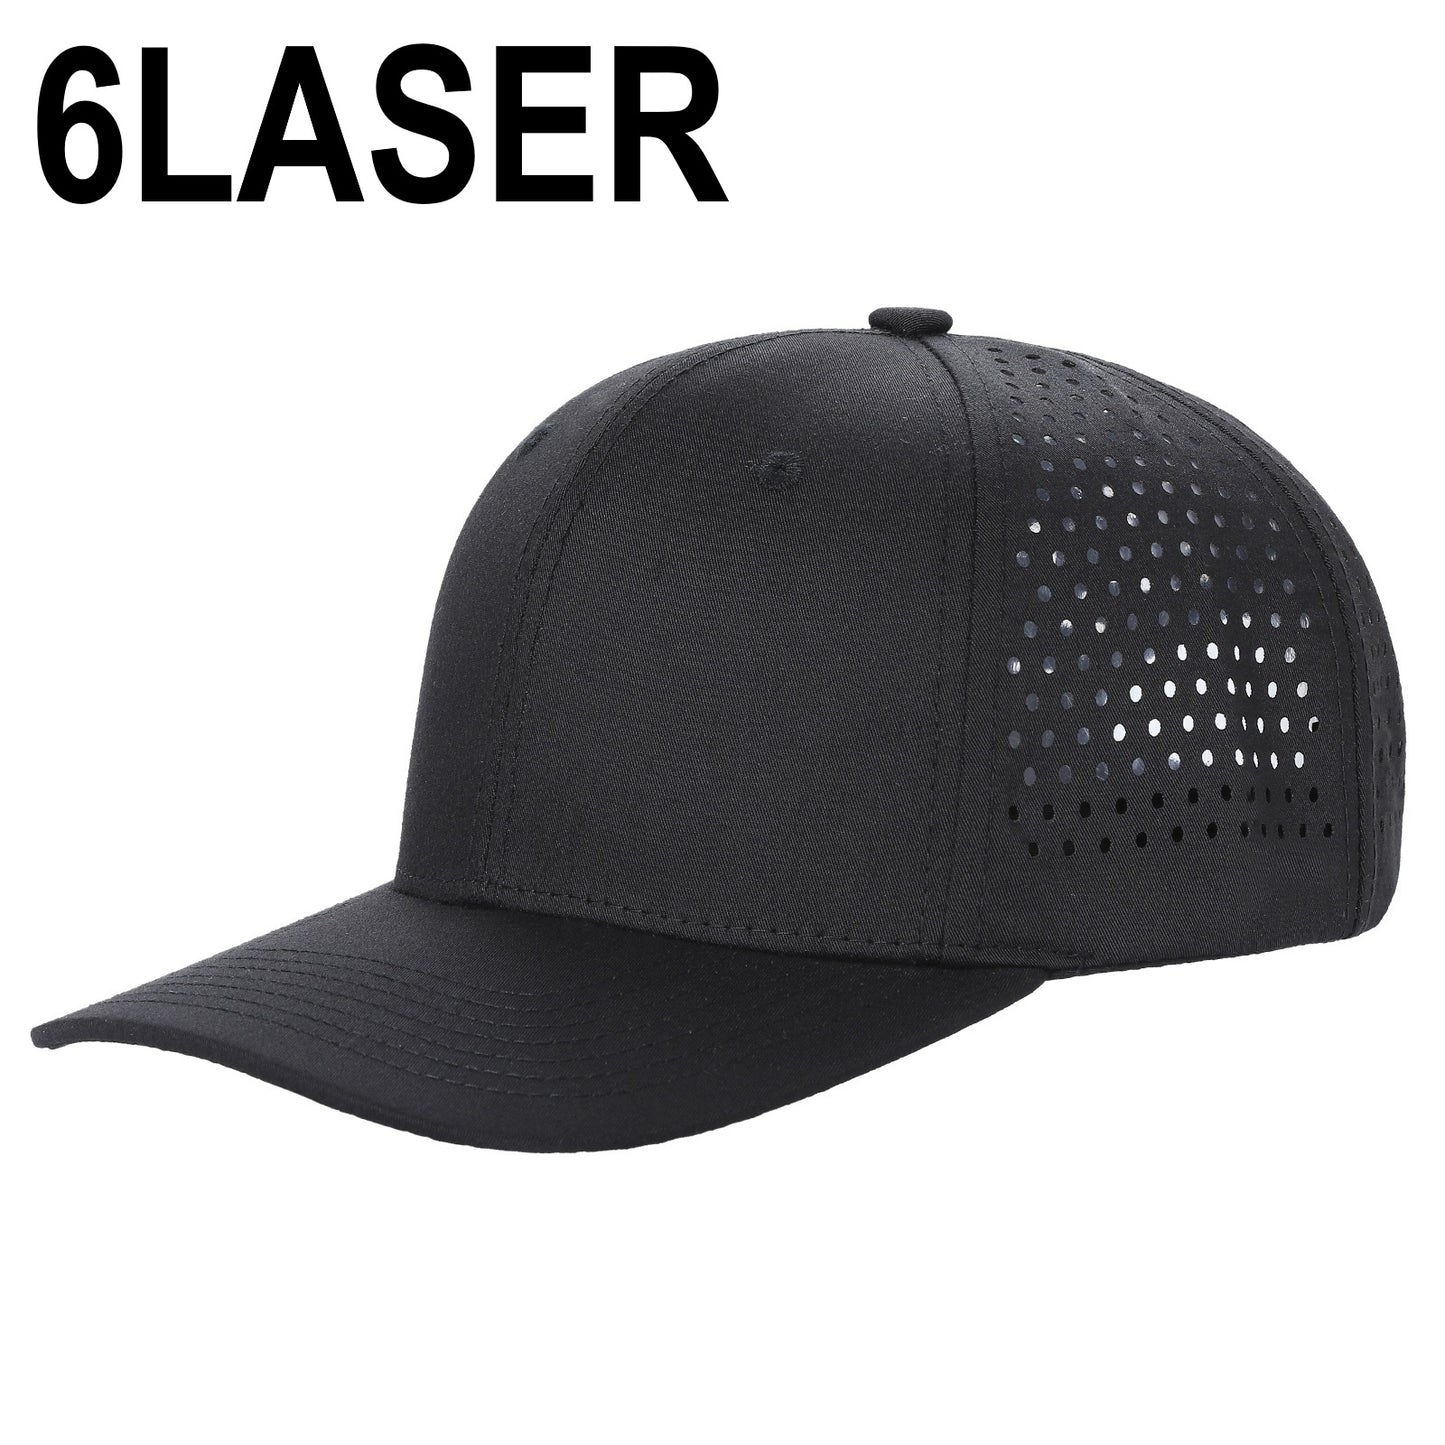 6LASER - 6 Panel Laser Vented Hat